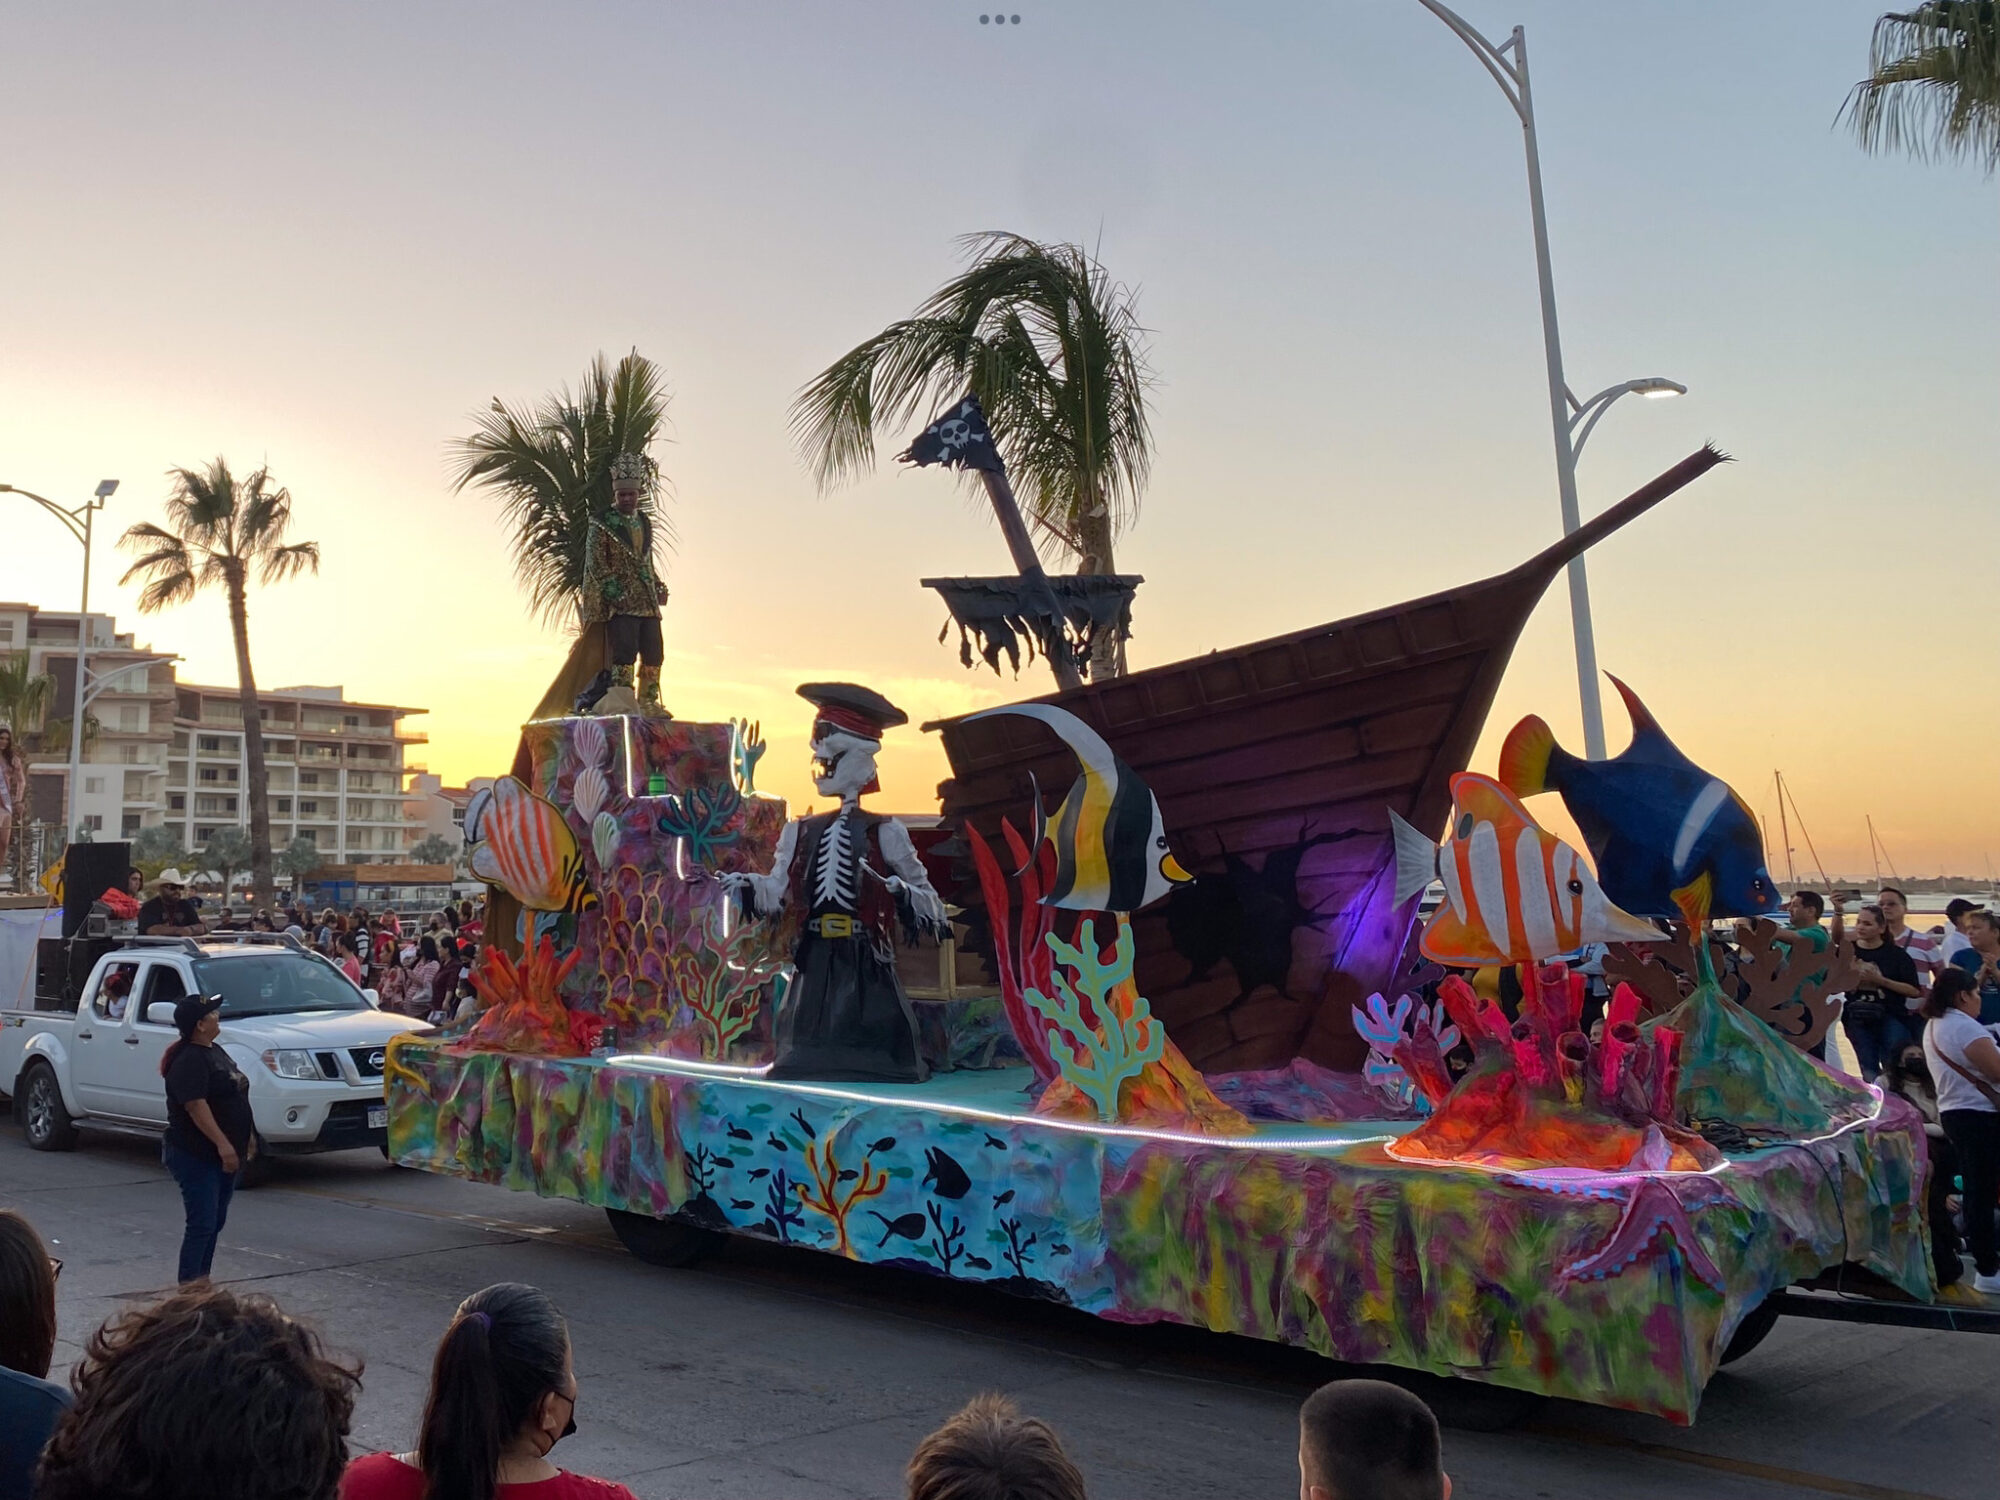 Canaval Parade in La Paz